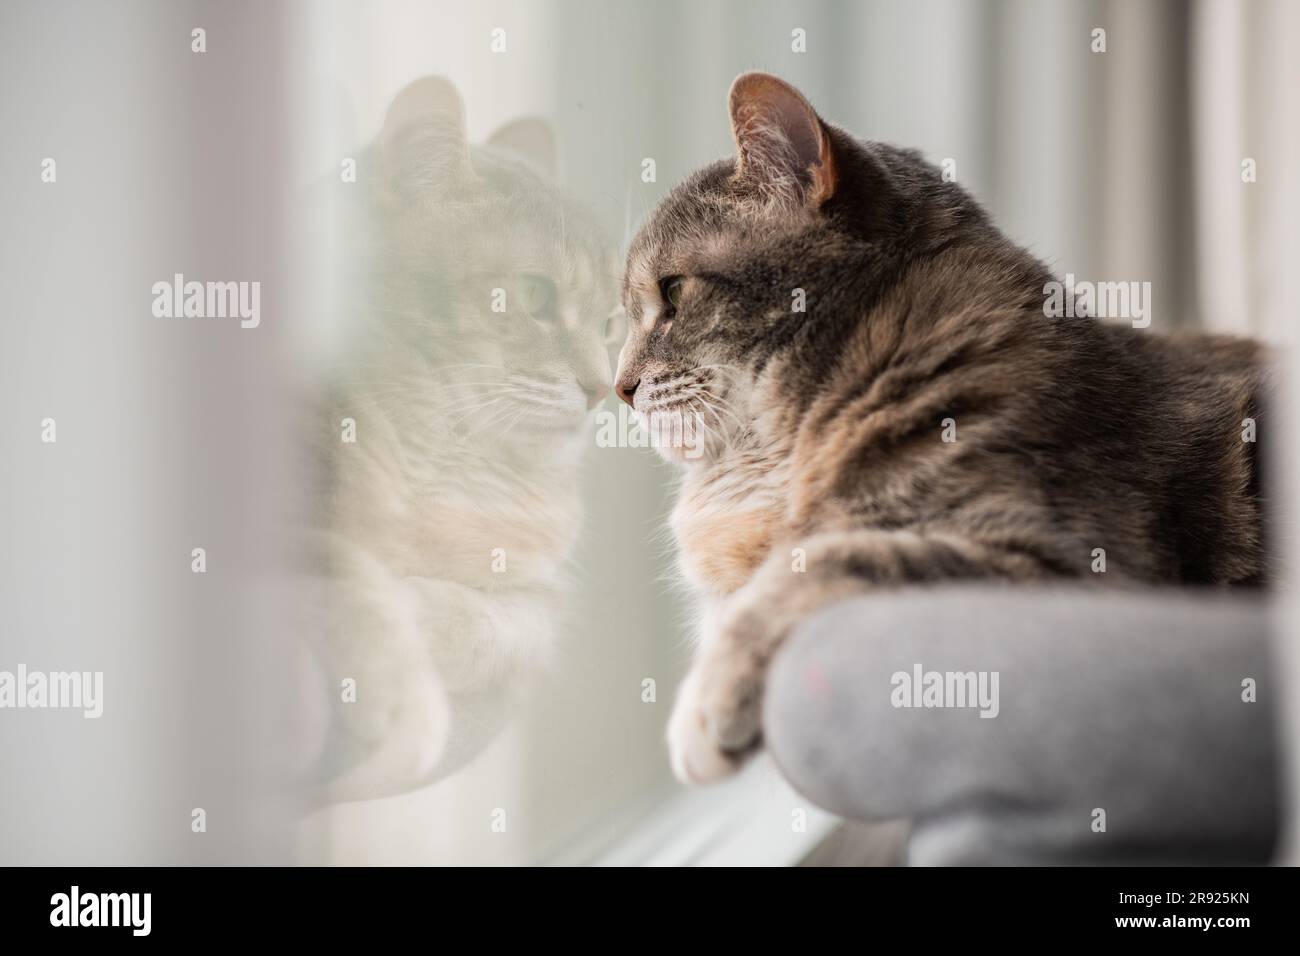 Eine graue, verdünnte Torbie-Katze, mit ihrer Nase gegen das Fenster gedrückt, die Vögel draußen betrachtet, ihre Reflexion im Fenster und negativer Platz für Kopien Stockfoto